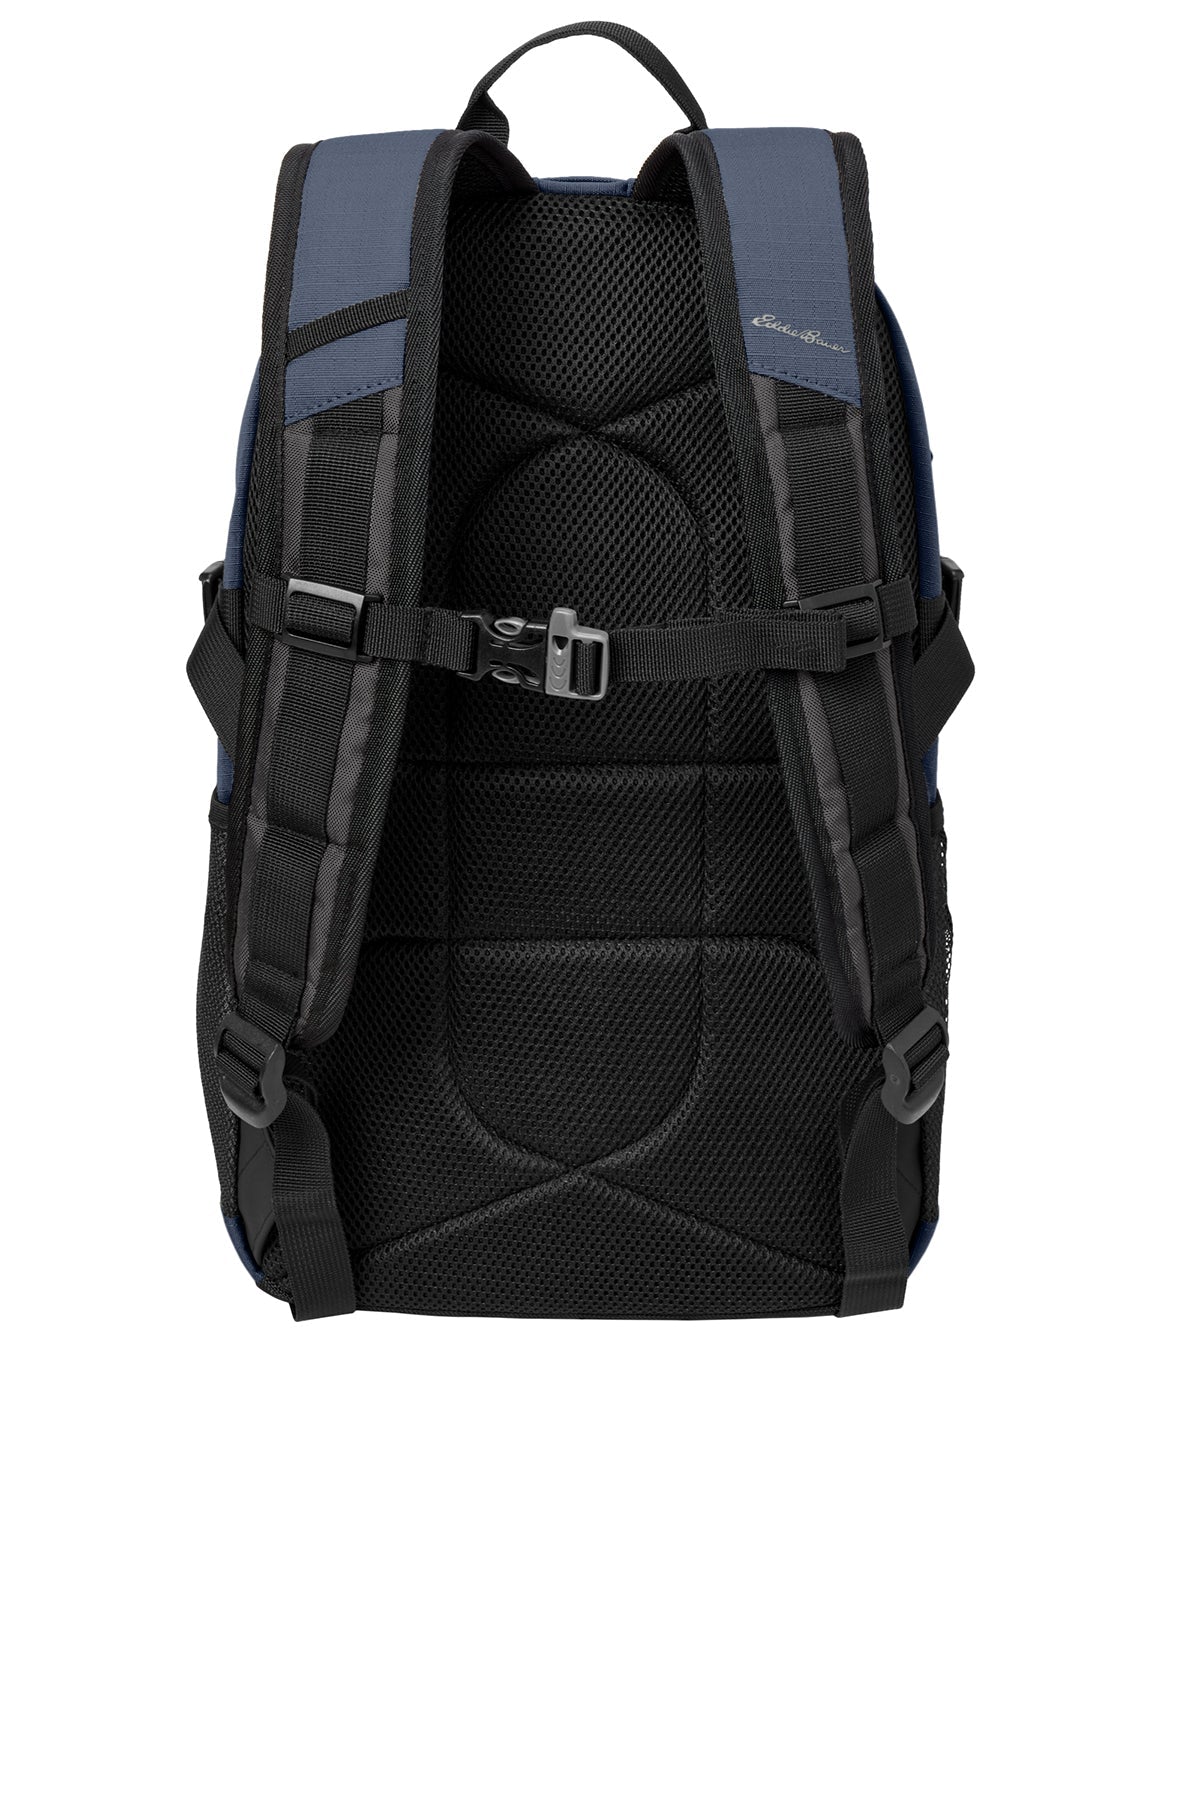 Eddie Bauer Custom Ripstop Backpacks, Coast Blue